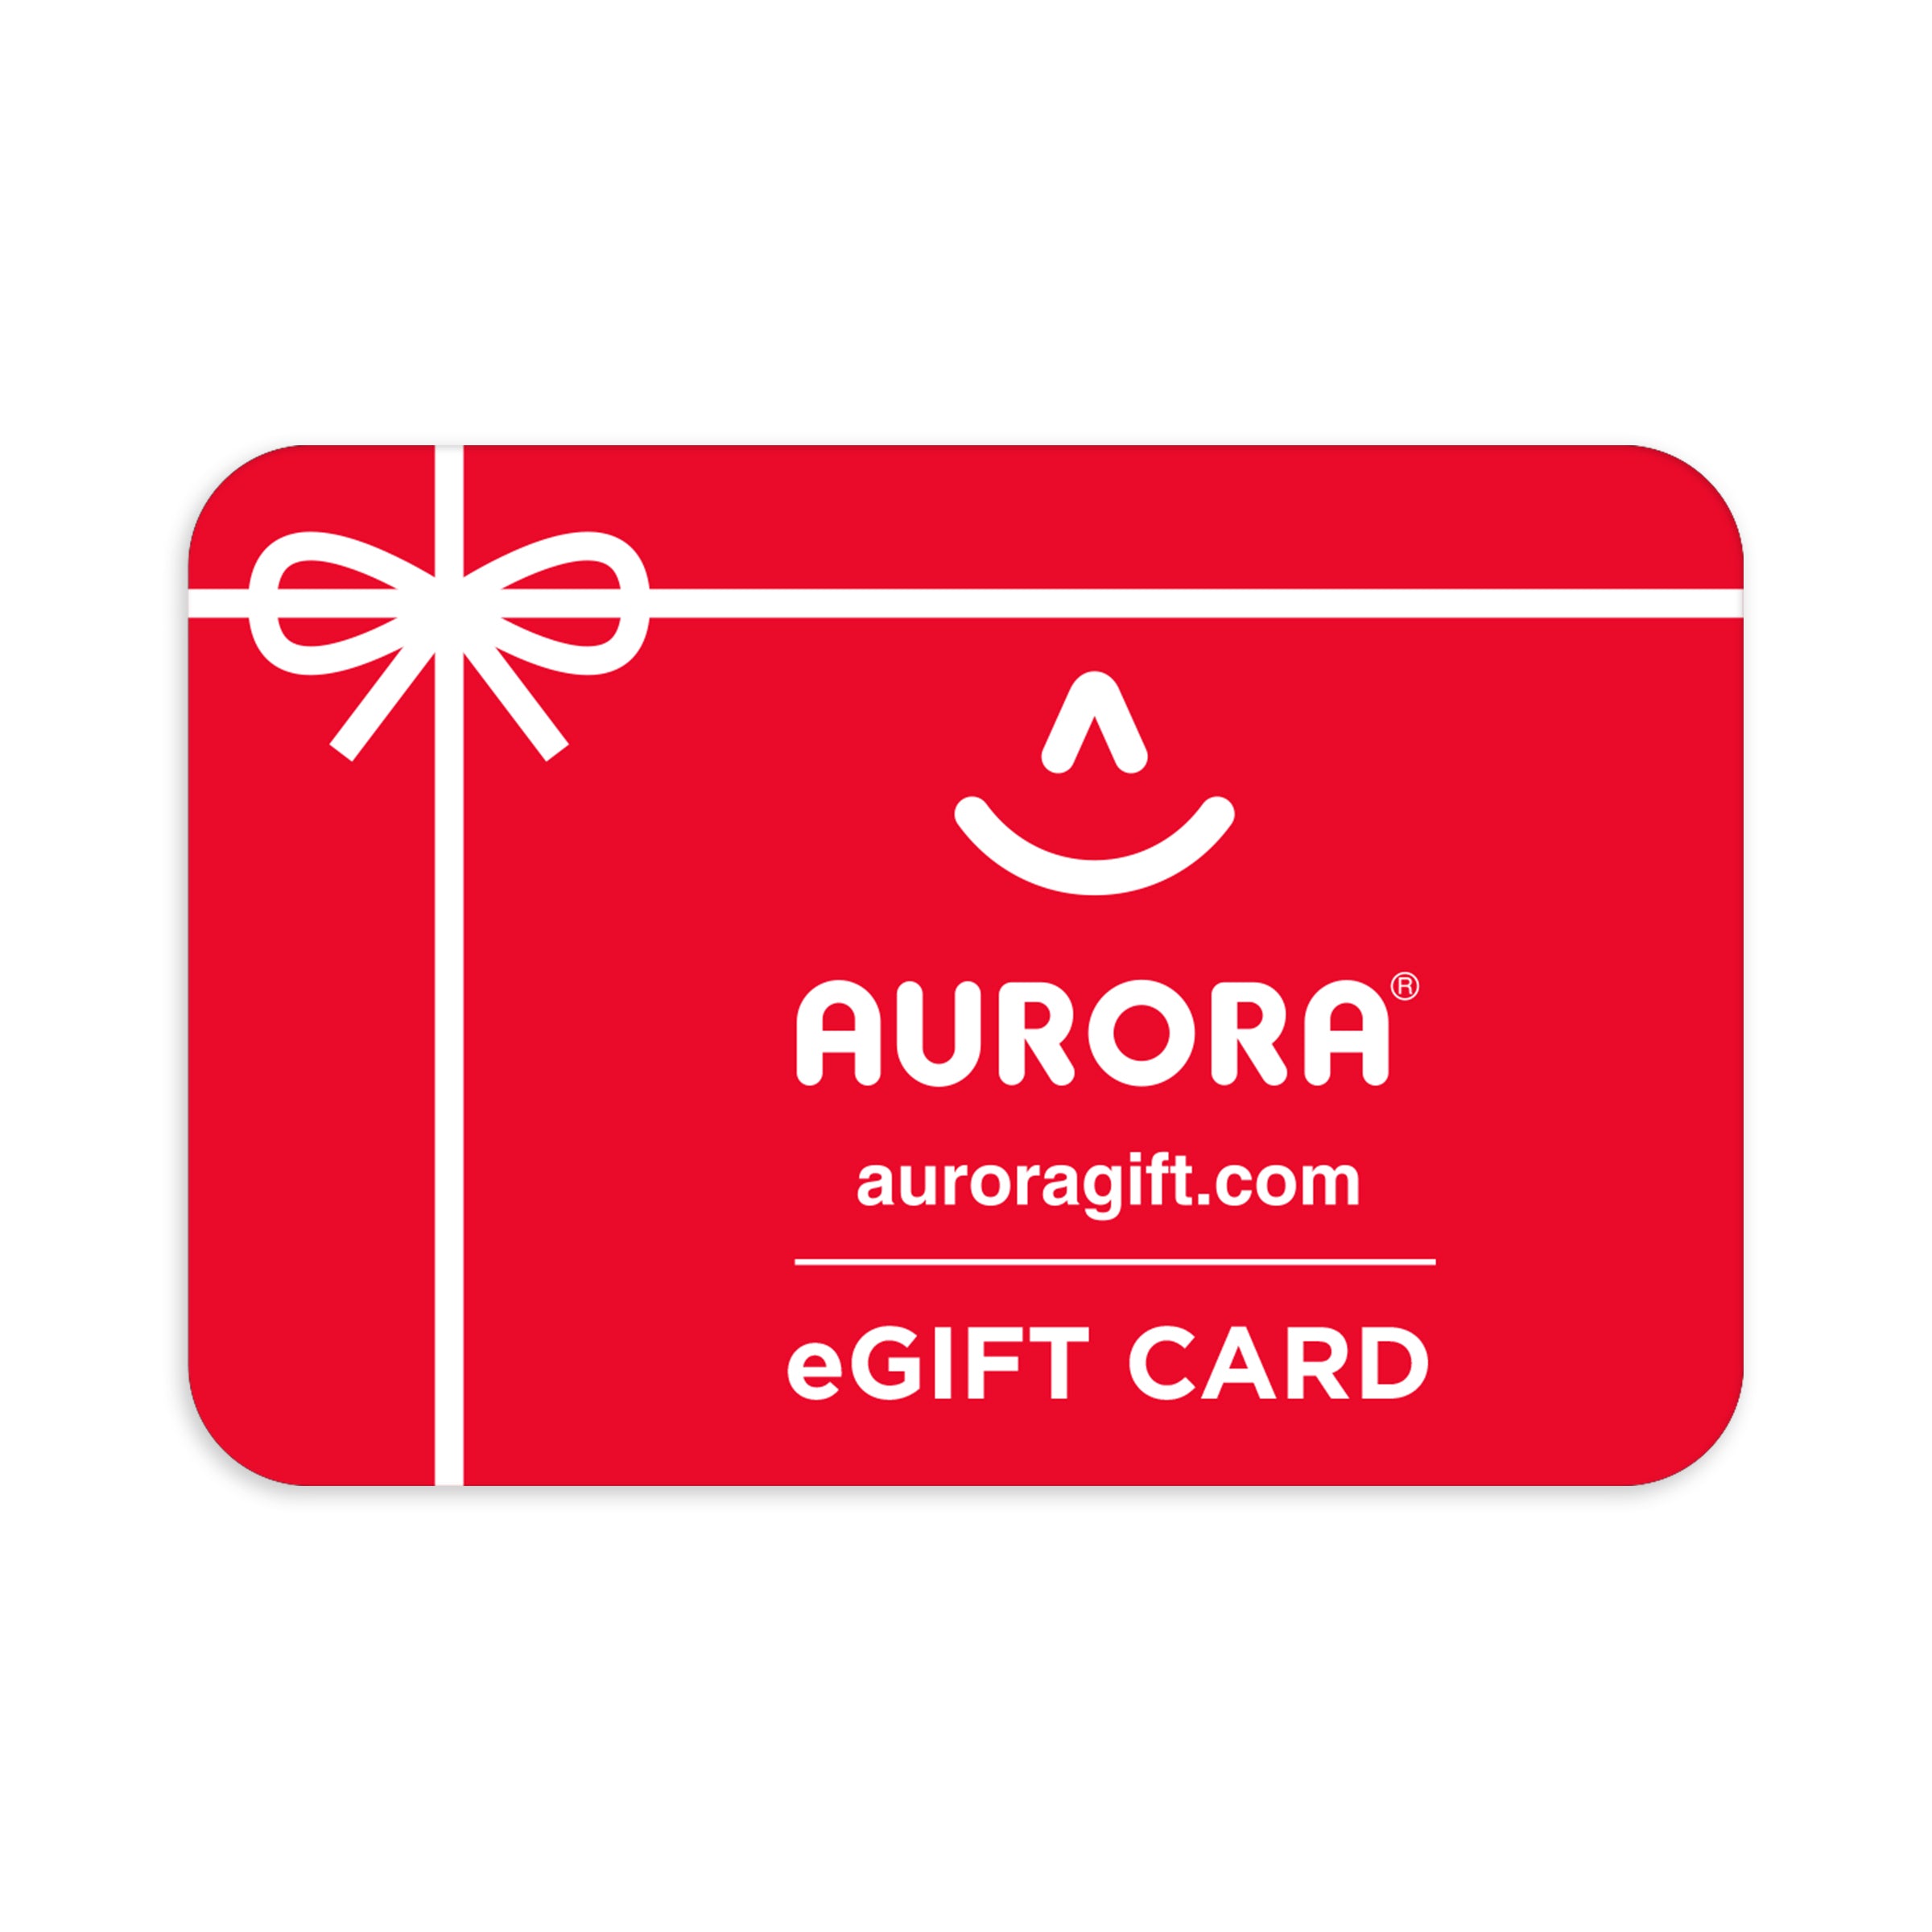 Aurora® Gift Card